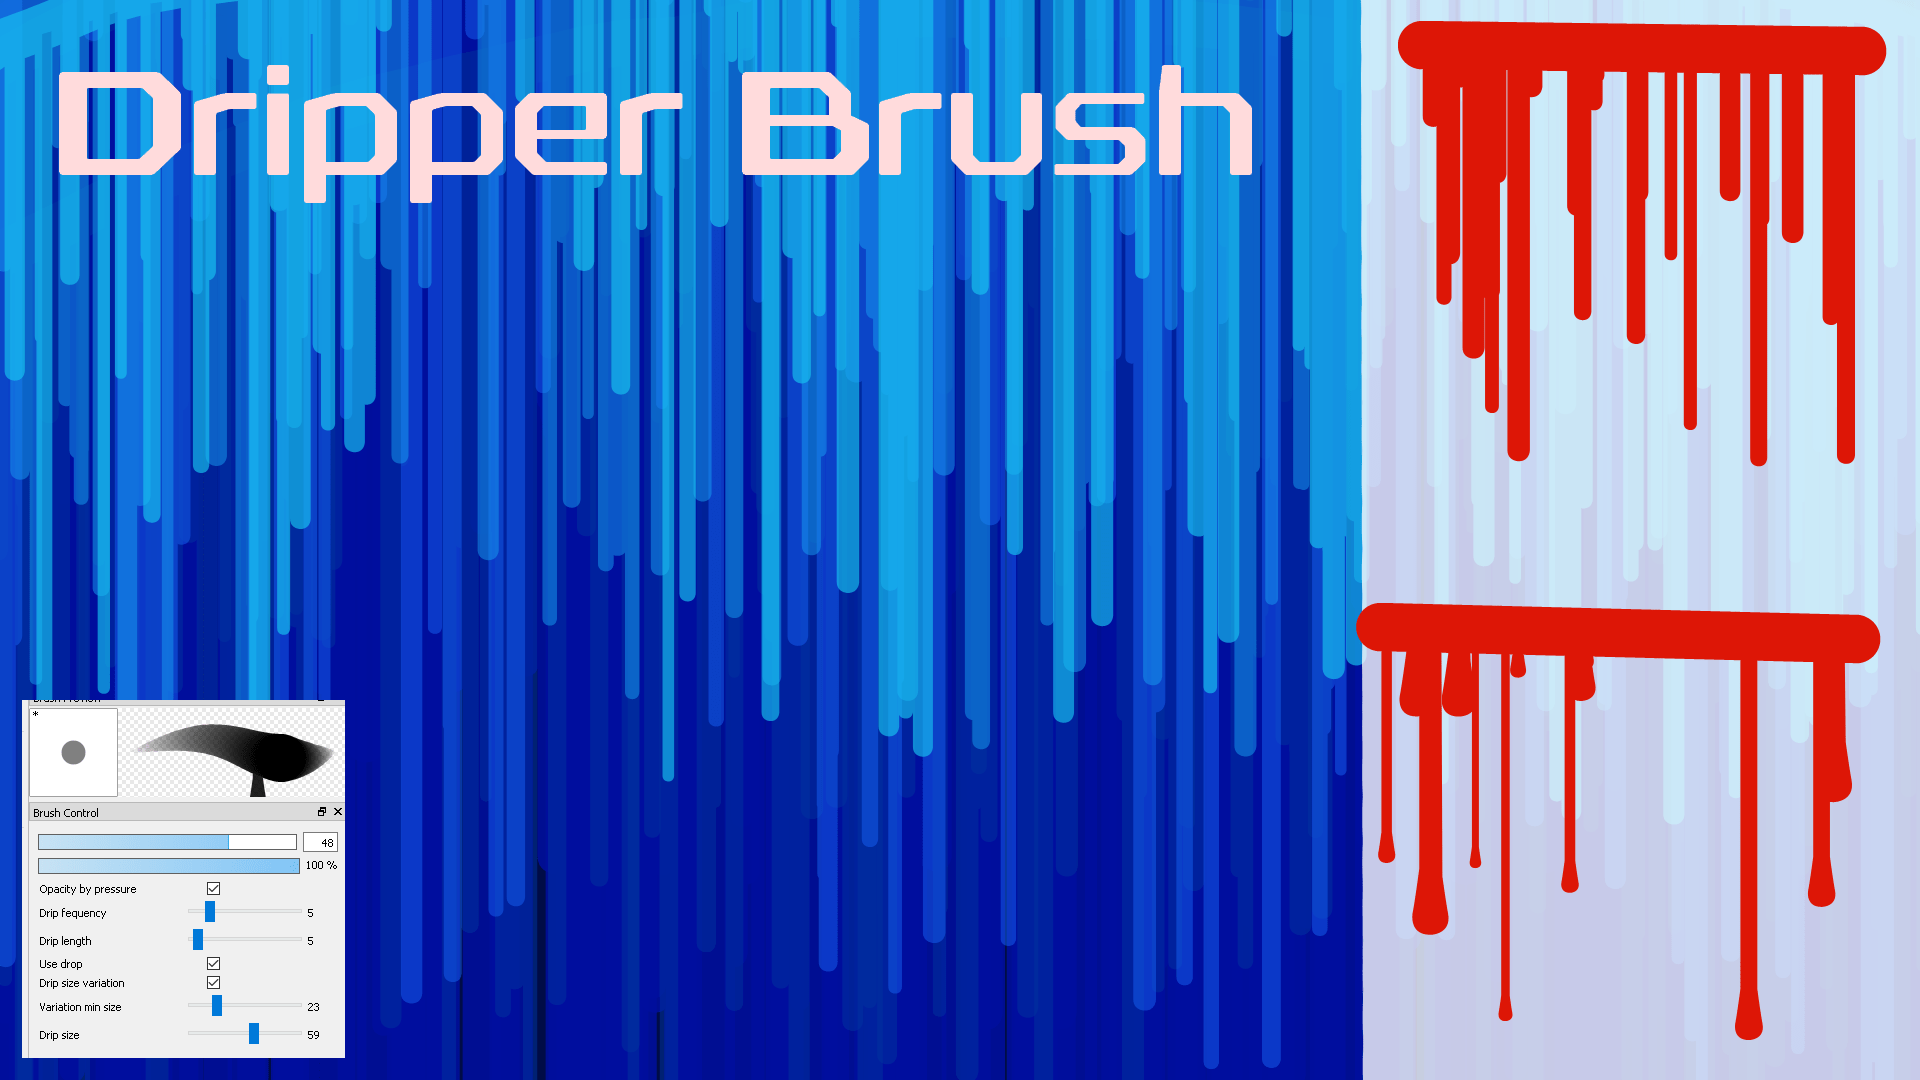 Dripper Brush